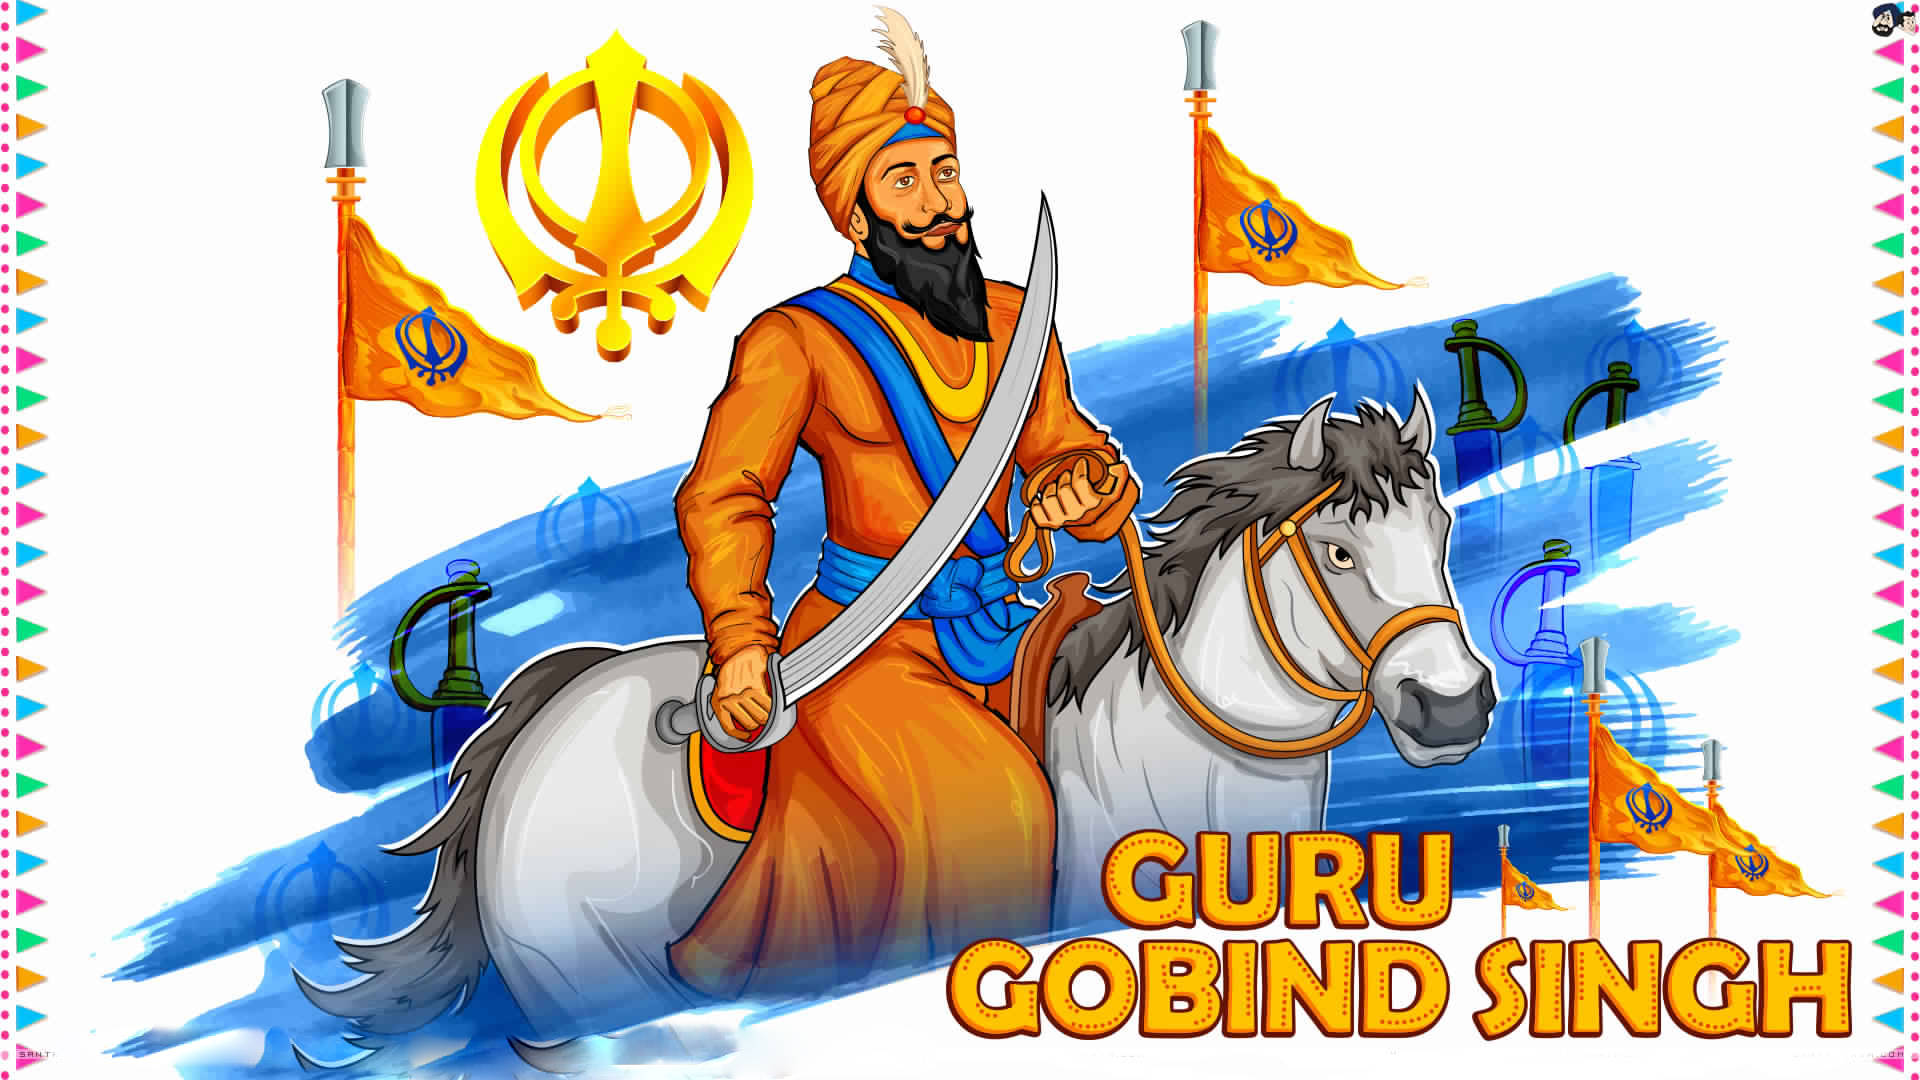 Guru Gobind Singh Ji Riding Horse